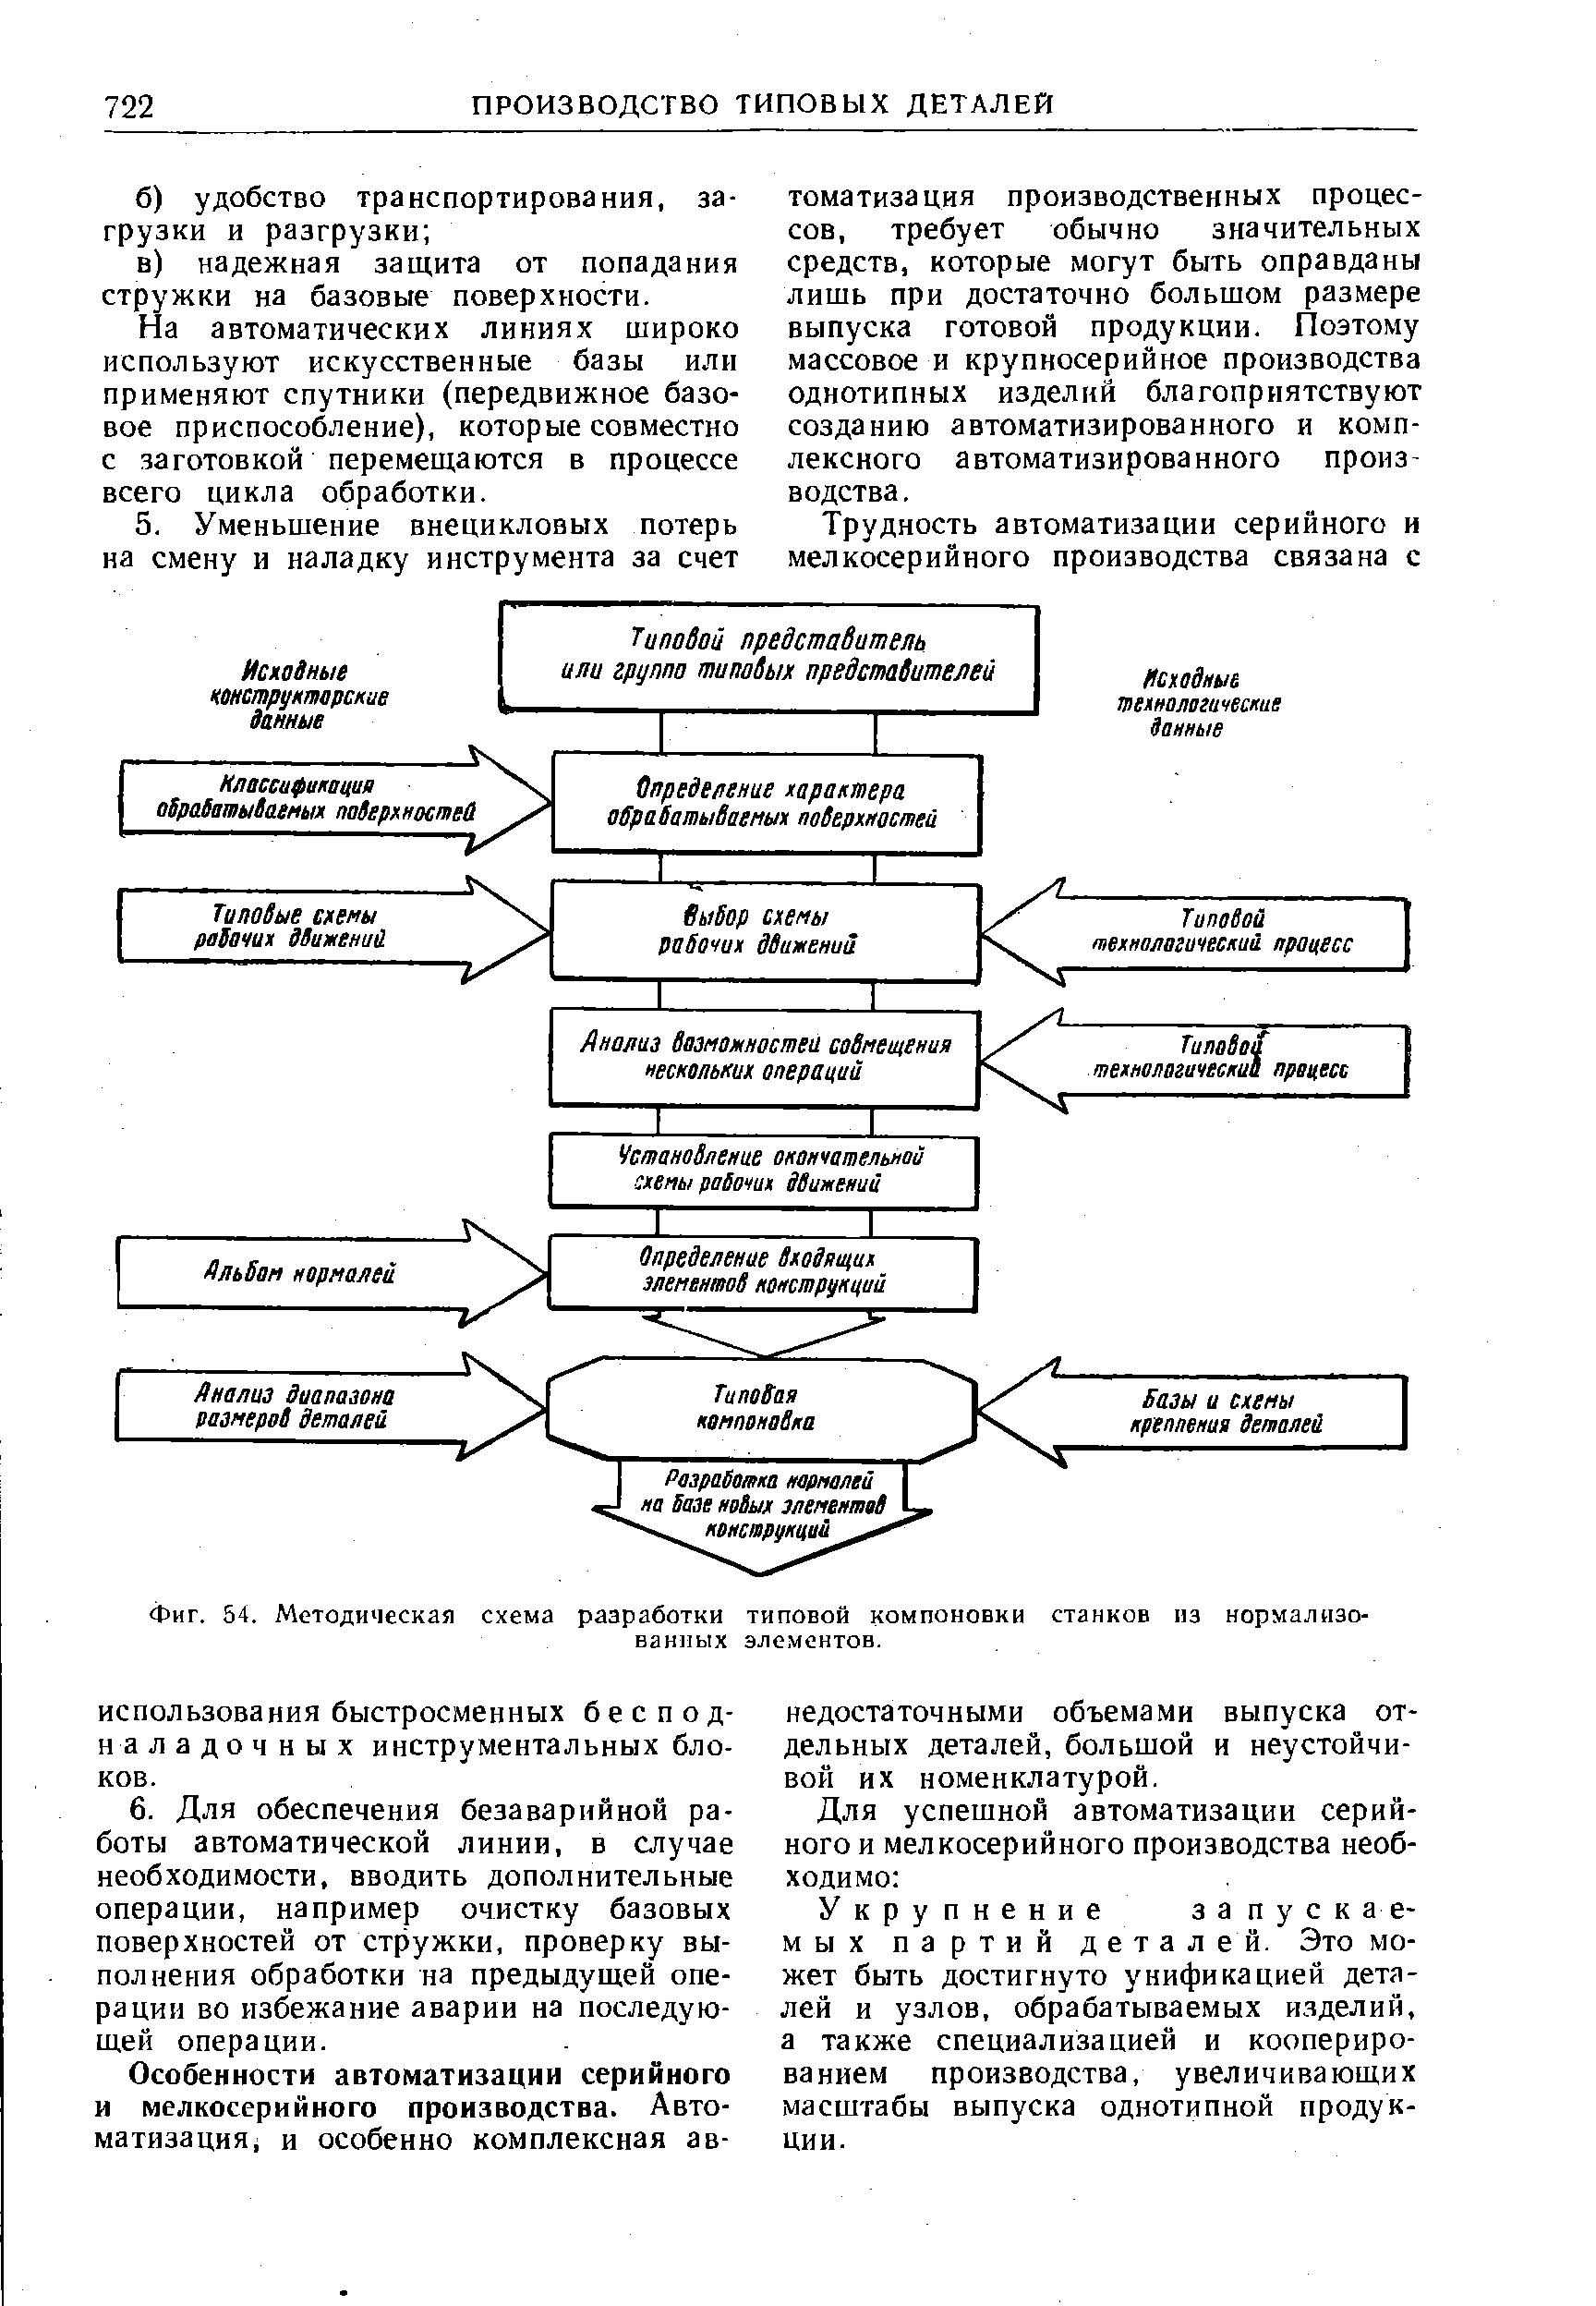 Фиг. 54. Методическая схема разработки типовой компоновки станков из нормализованных элементов.
